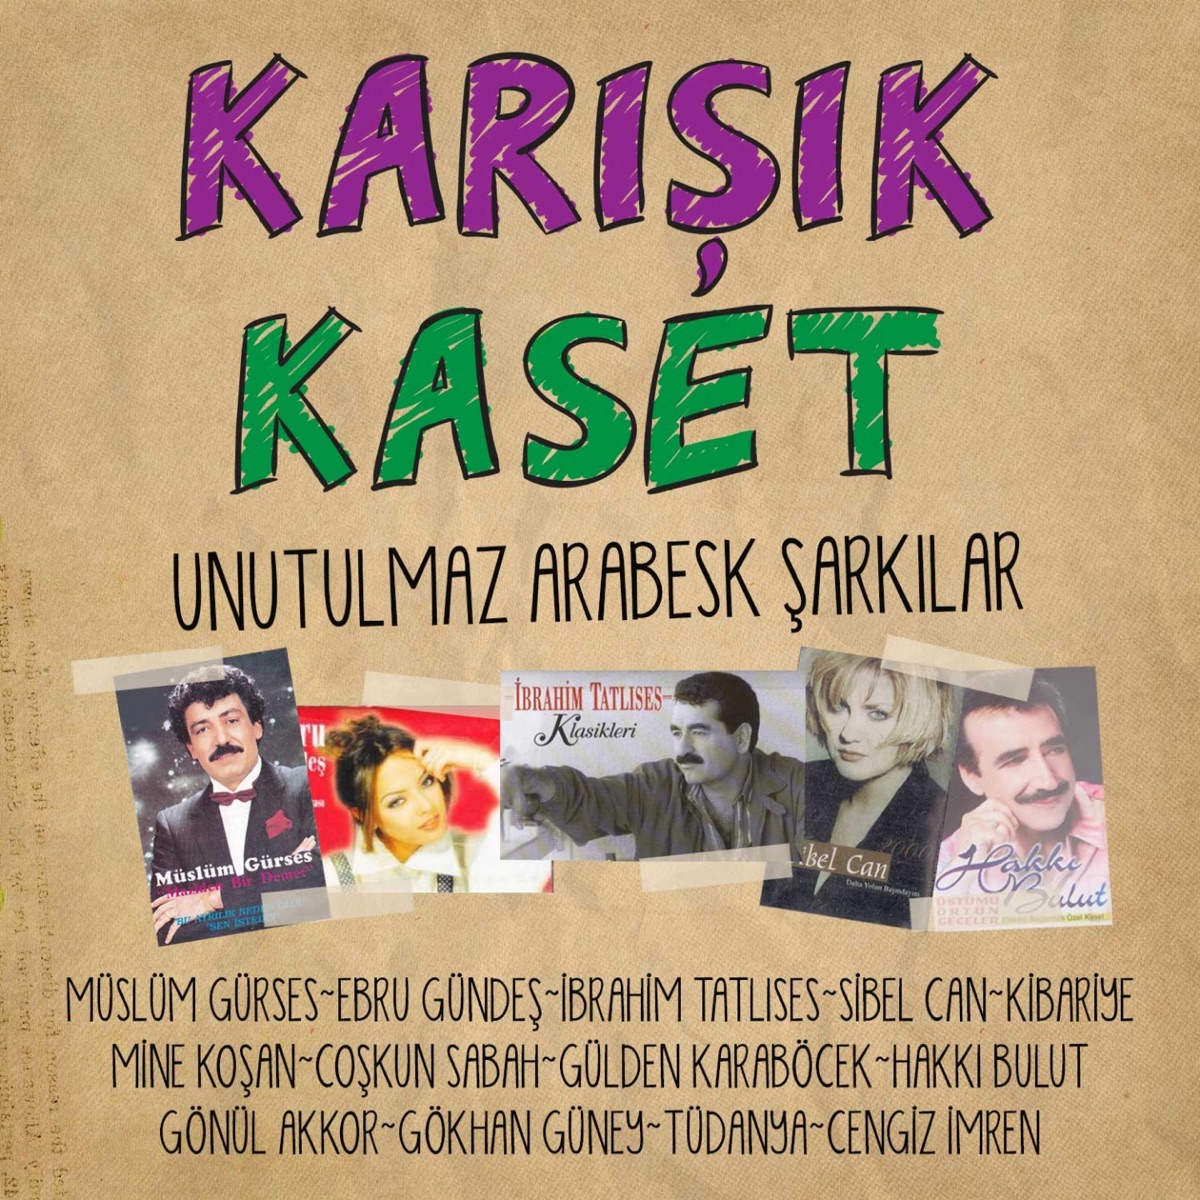 Karışık Kaset (Unutulmaz Arabesk Şarkılar) by Various Artists on Apple Music